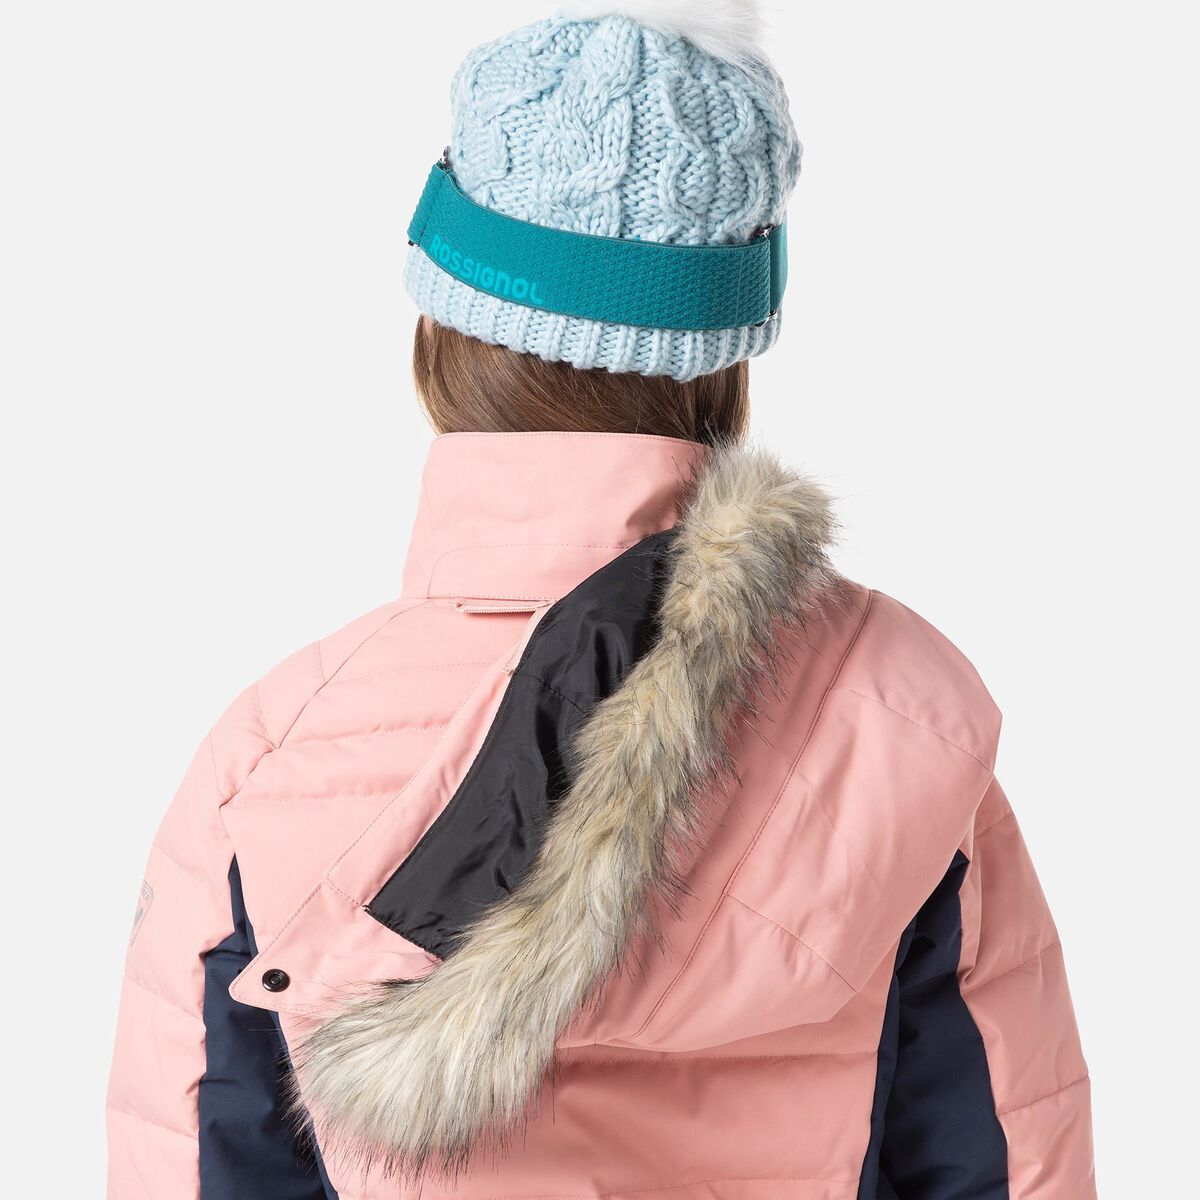 Girls' Polydown Ski Jacket